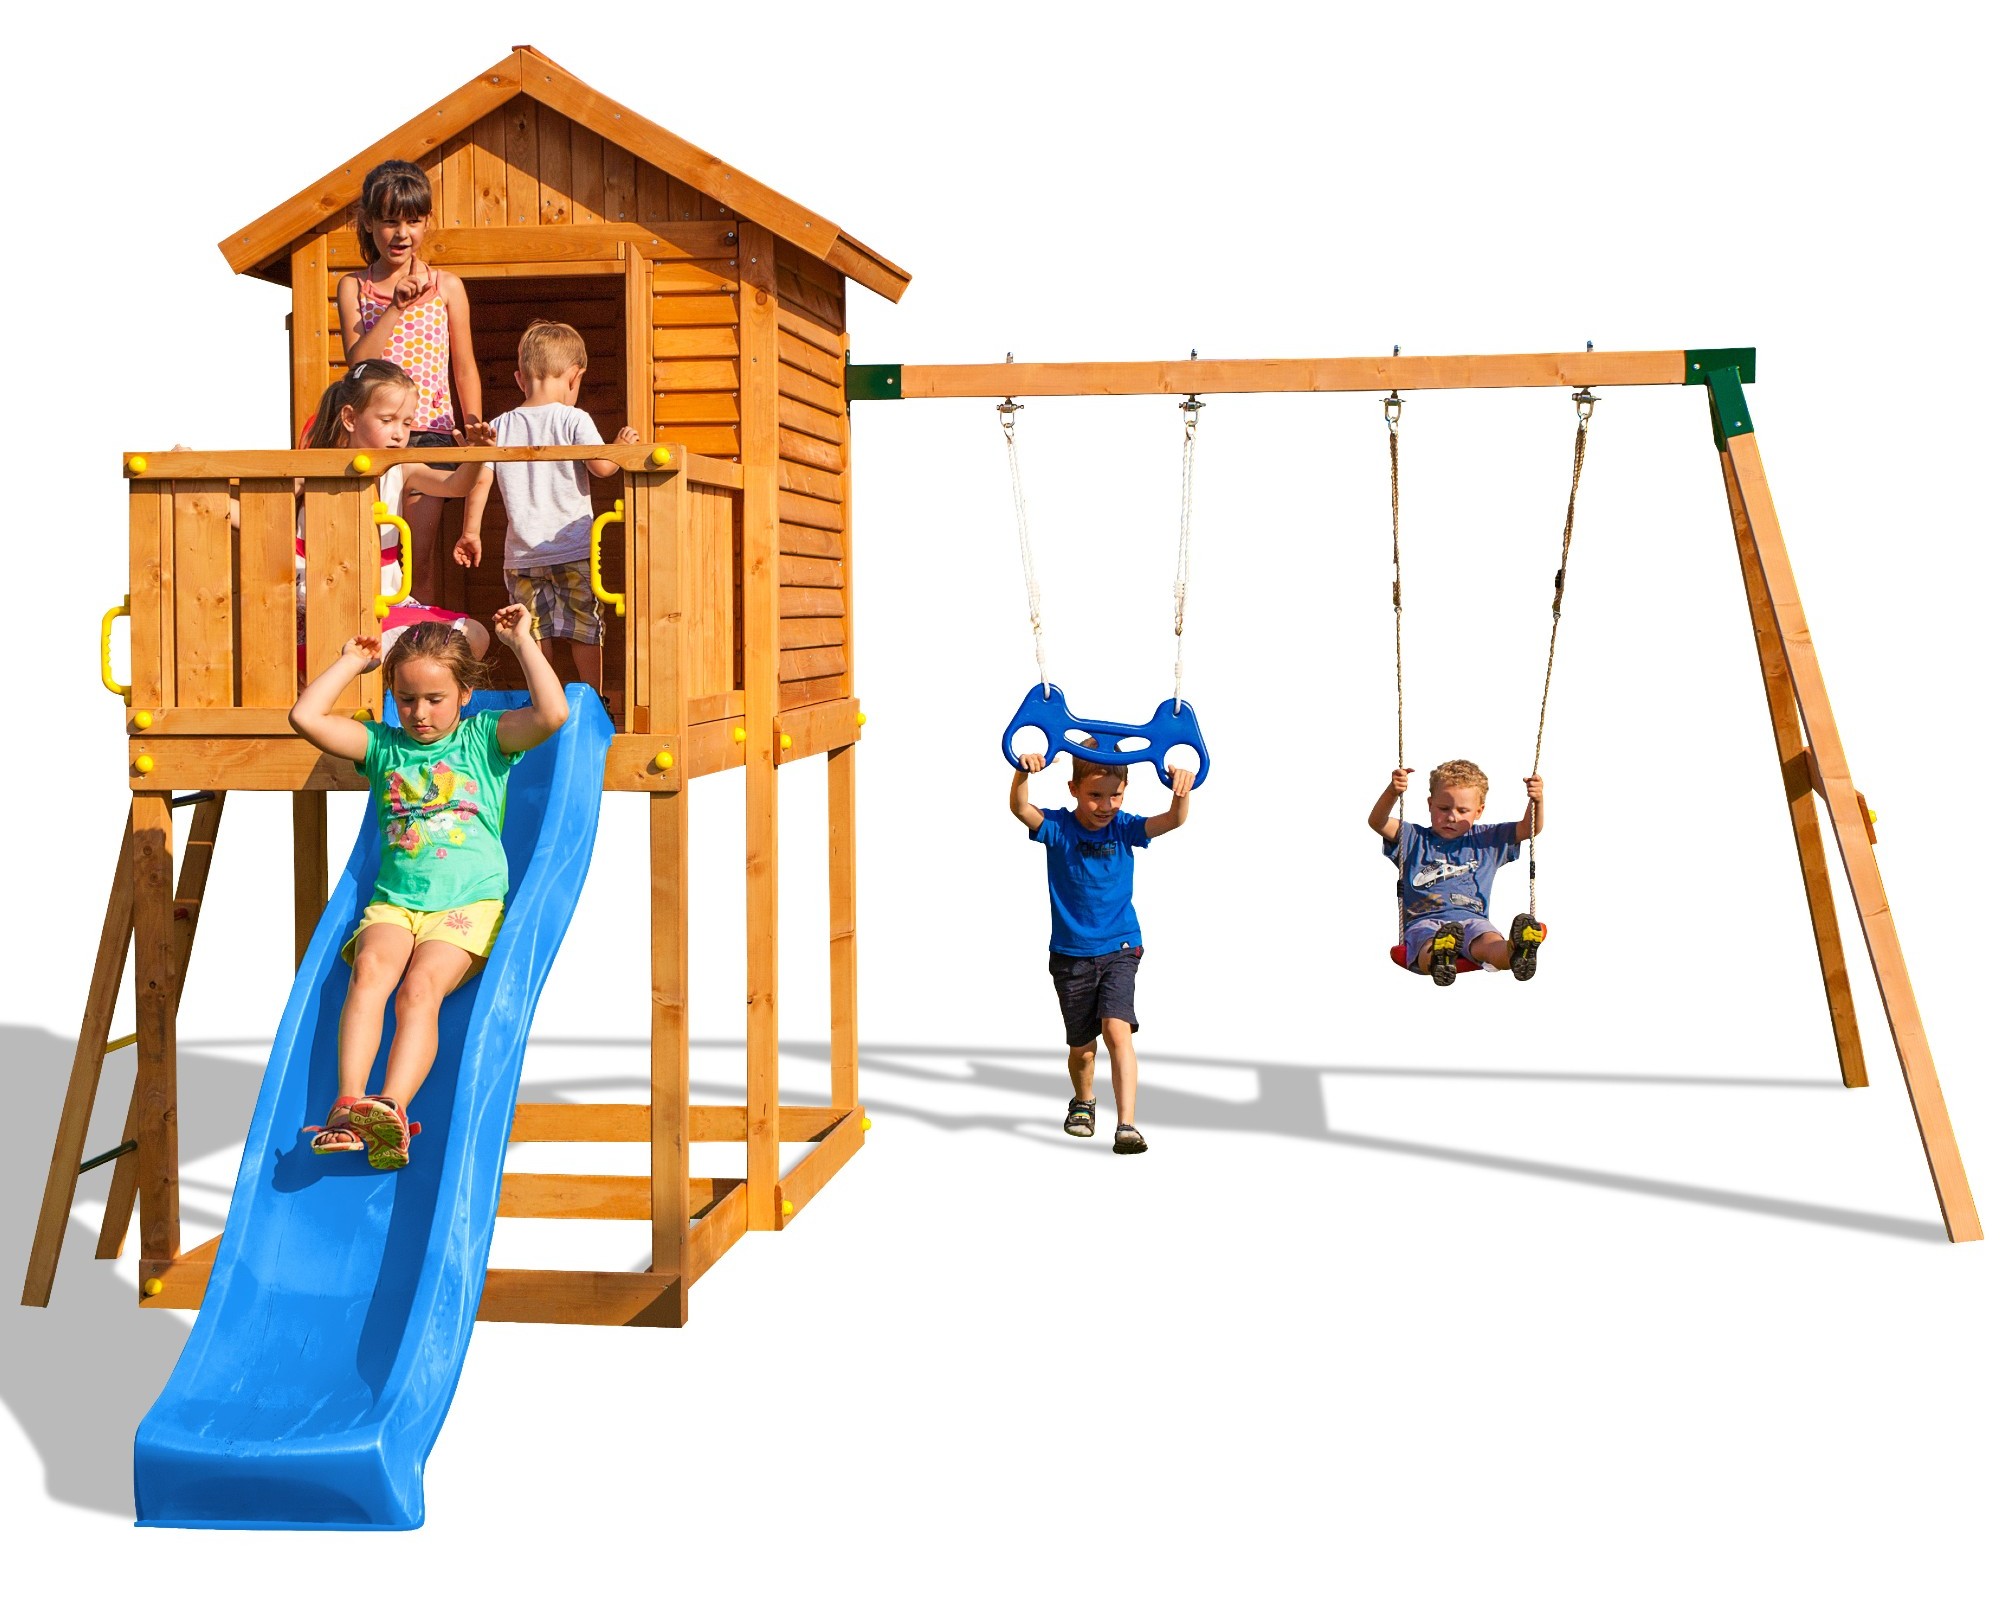 Plac zabaw drewniany ogrodowy MyHouse Move domek, zjedalnia, 2x hutawka, drabinka, kierownica